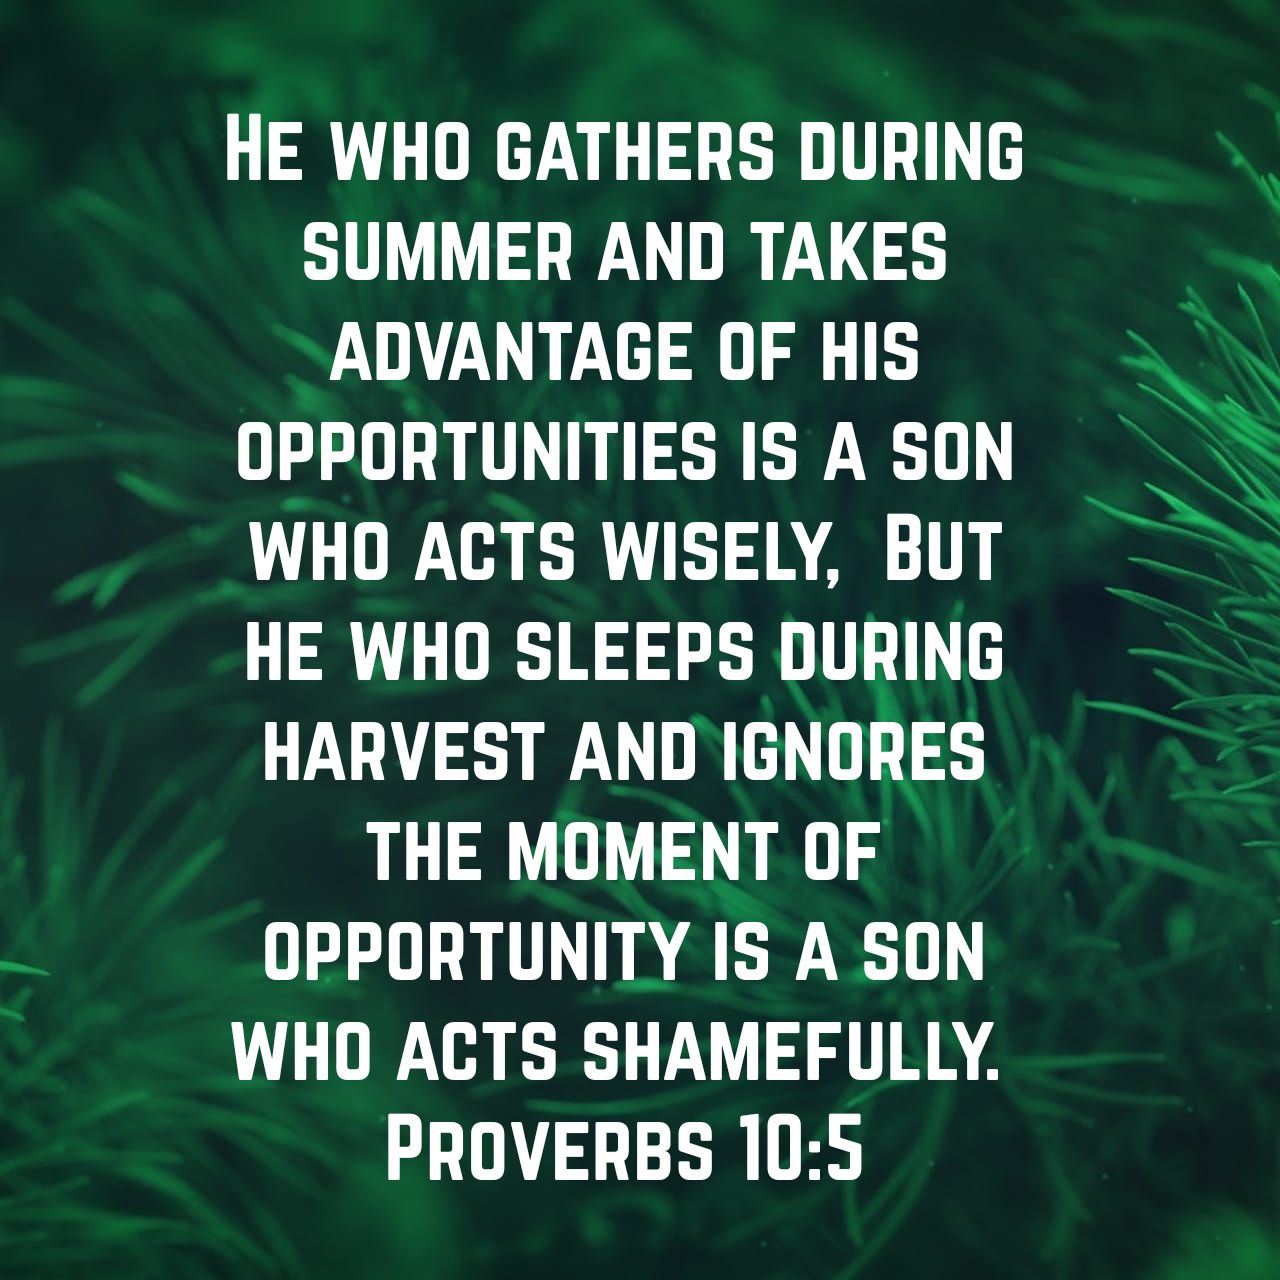 Proverbs 10